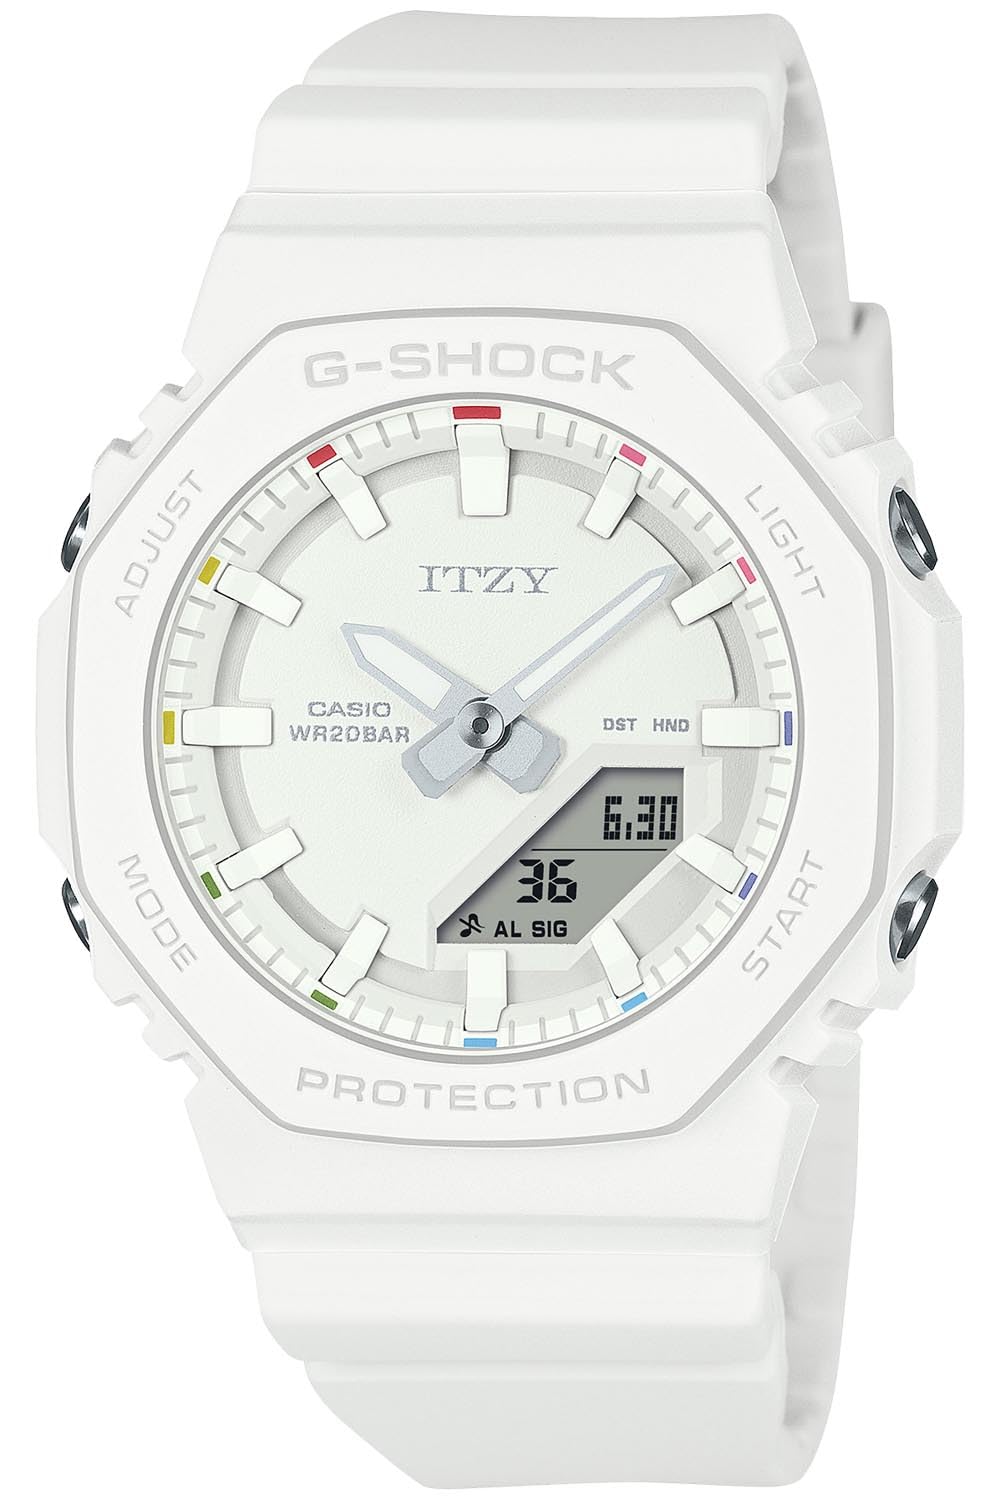 ジーショック [カシオ] 腕時計 【国内正規品】ITZYコラボレーションモデル GMA-P2100IT-7AJR レディース ホワイト - BanzaiHobby